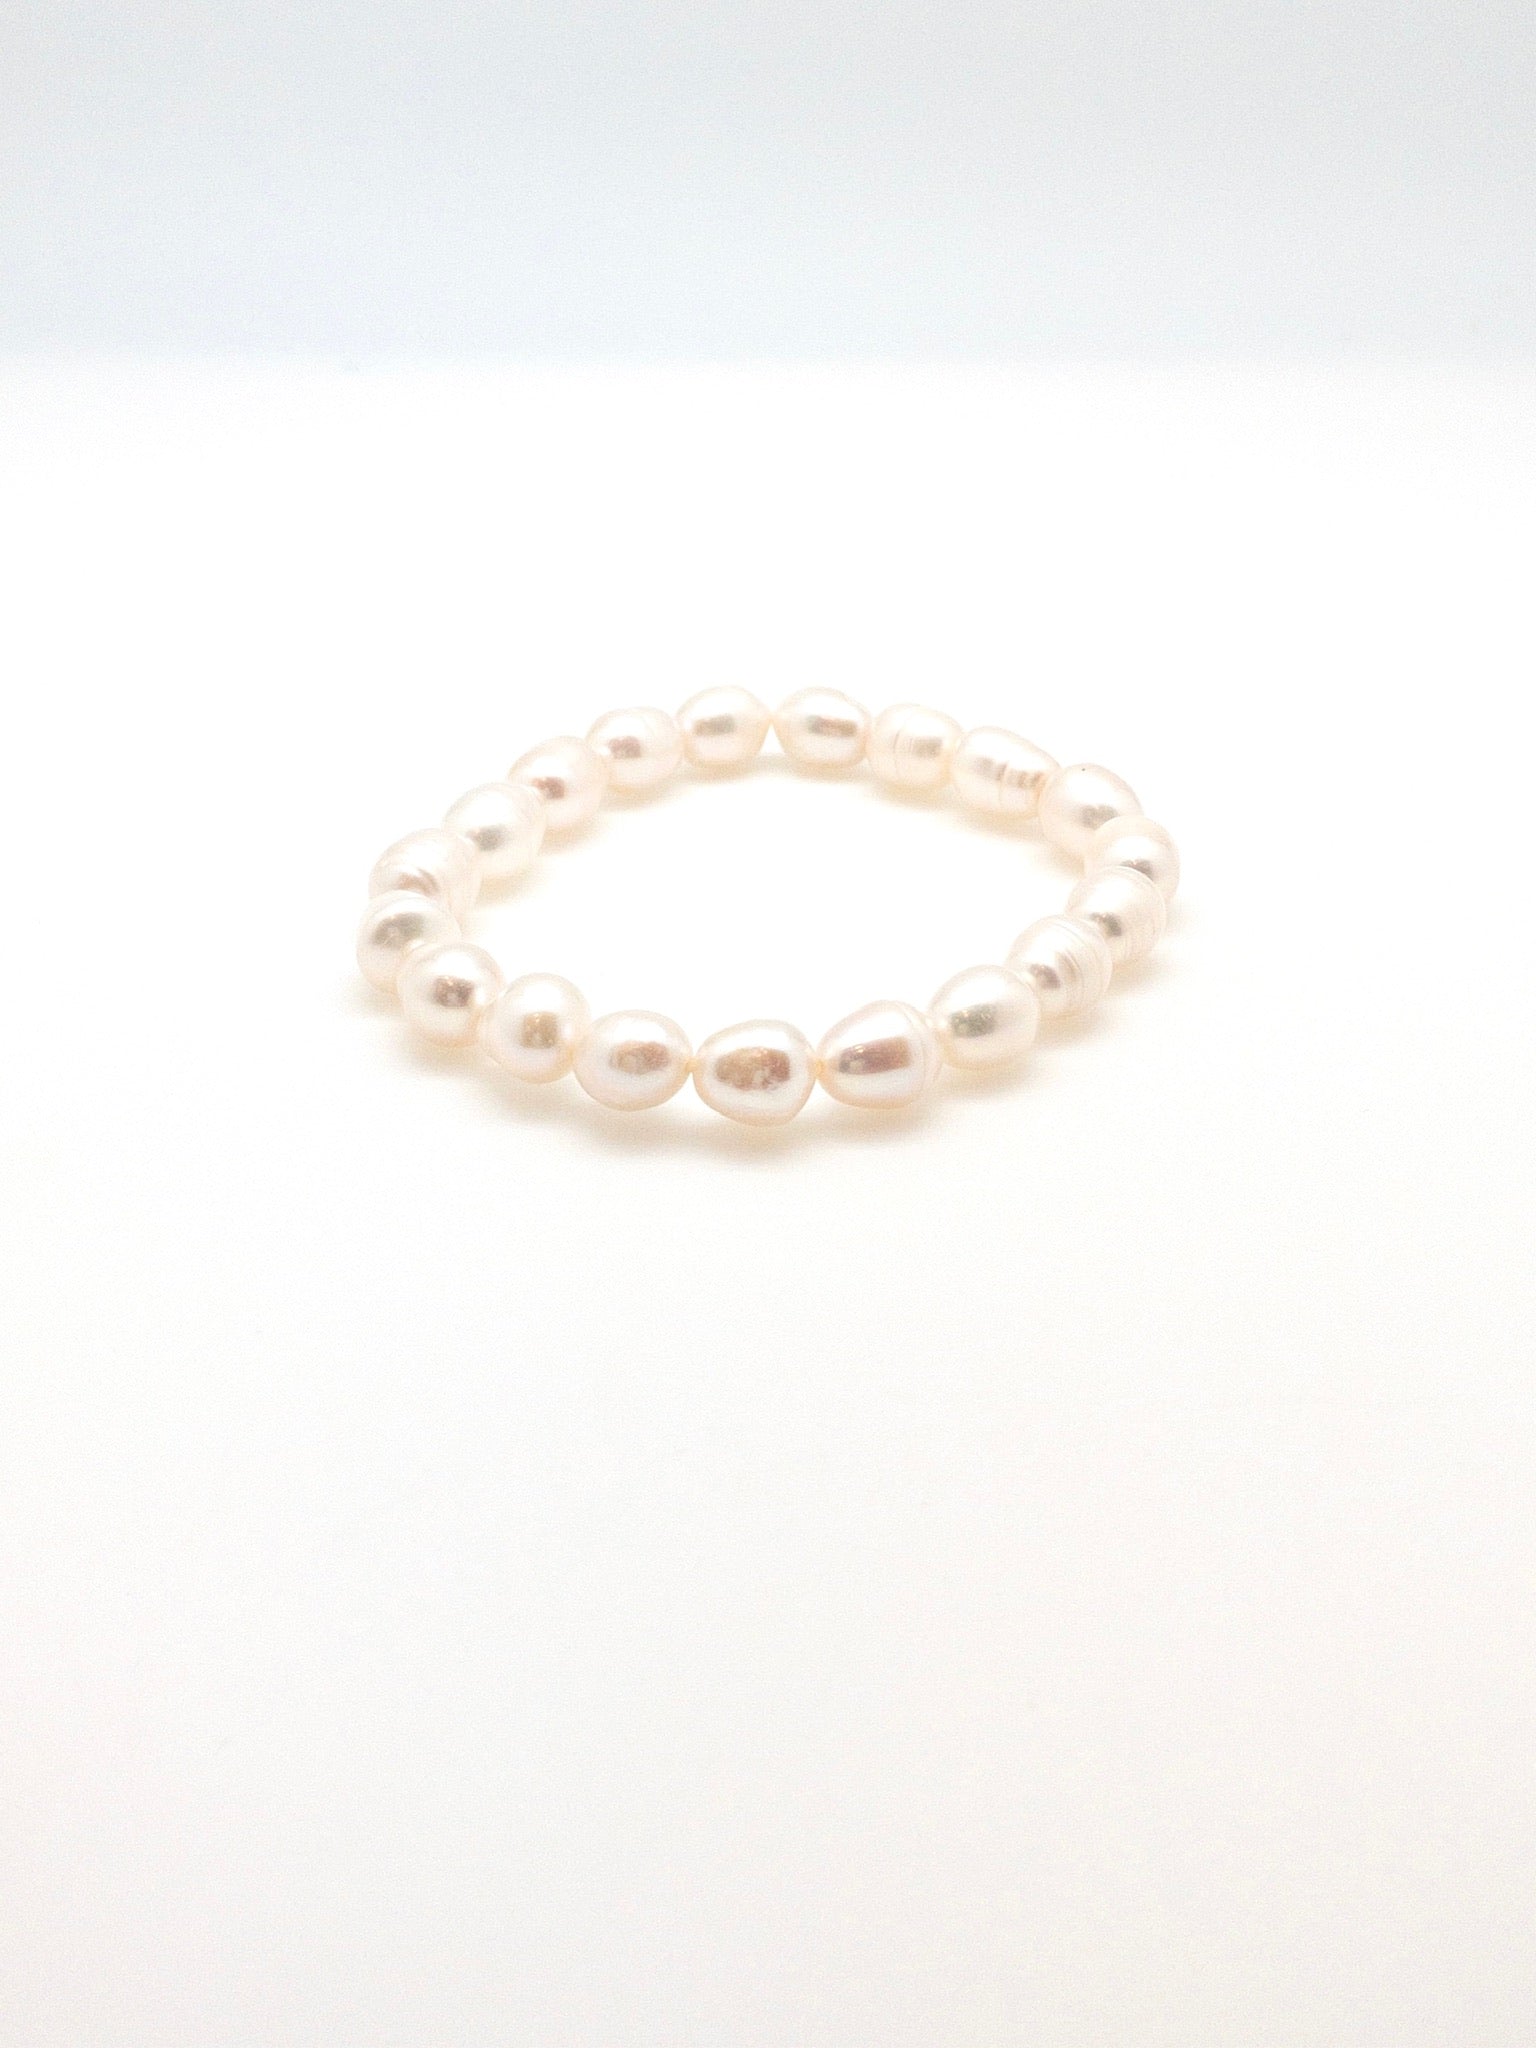 oval shaped pearl bracelet Muriel pearl bracelet 